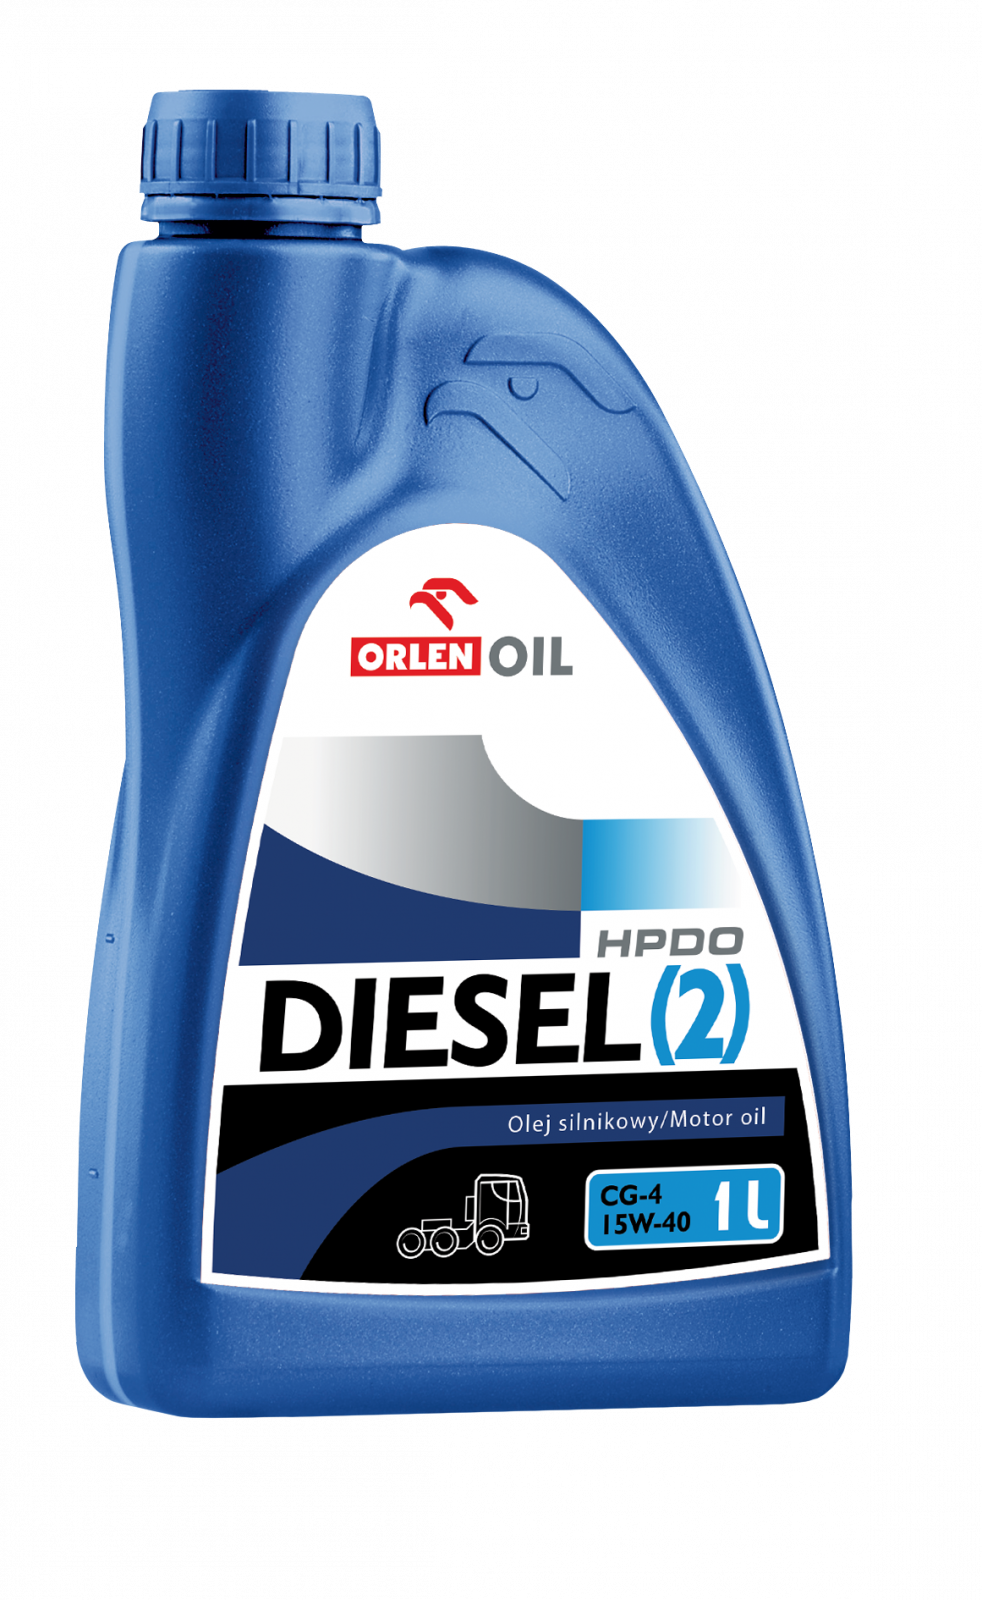 ORLEN OIL DIESEL (2) HPDO CG-4 15W-40 20l